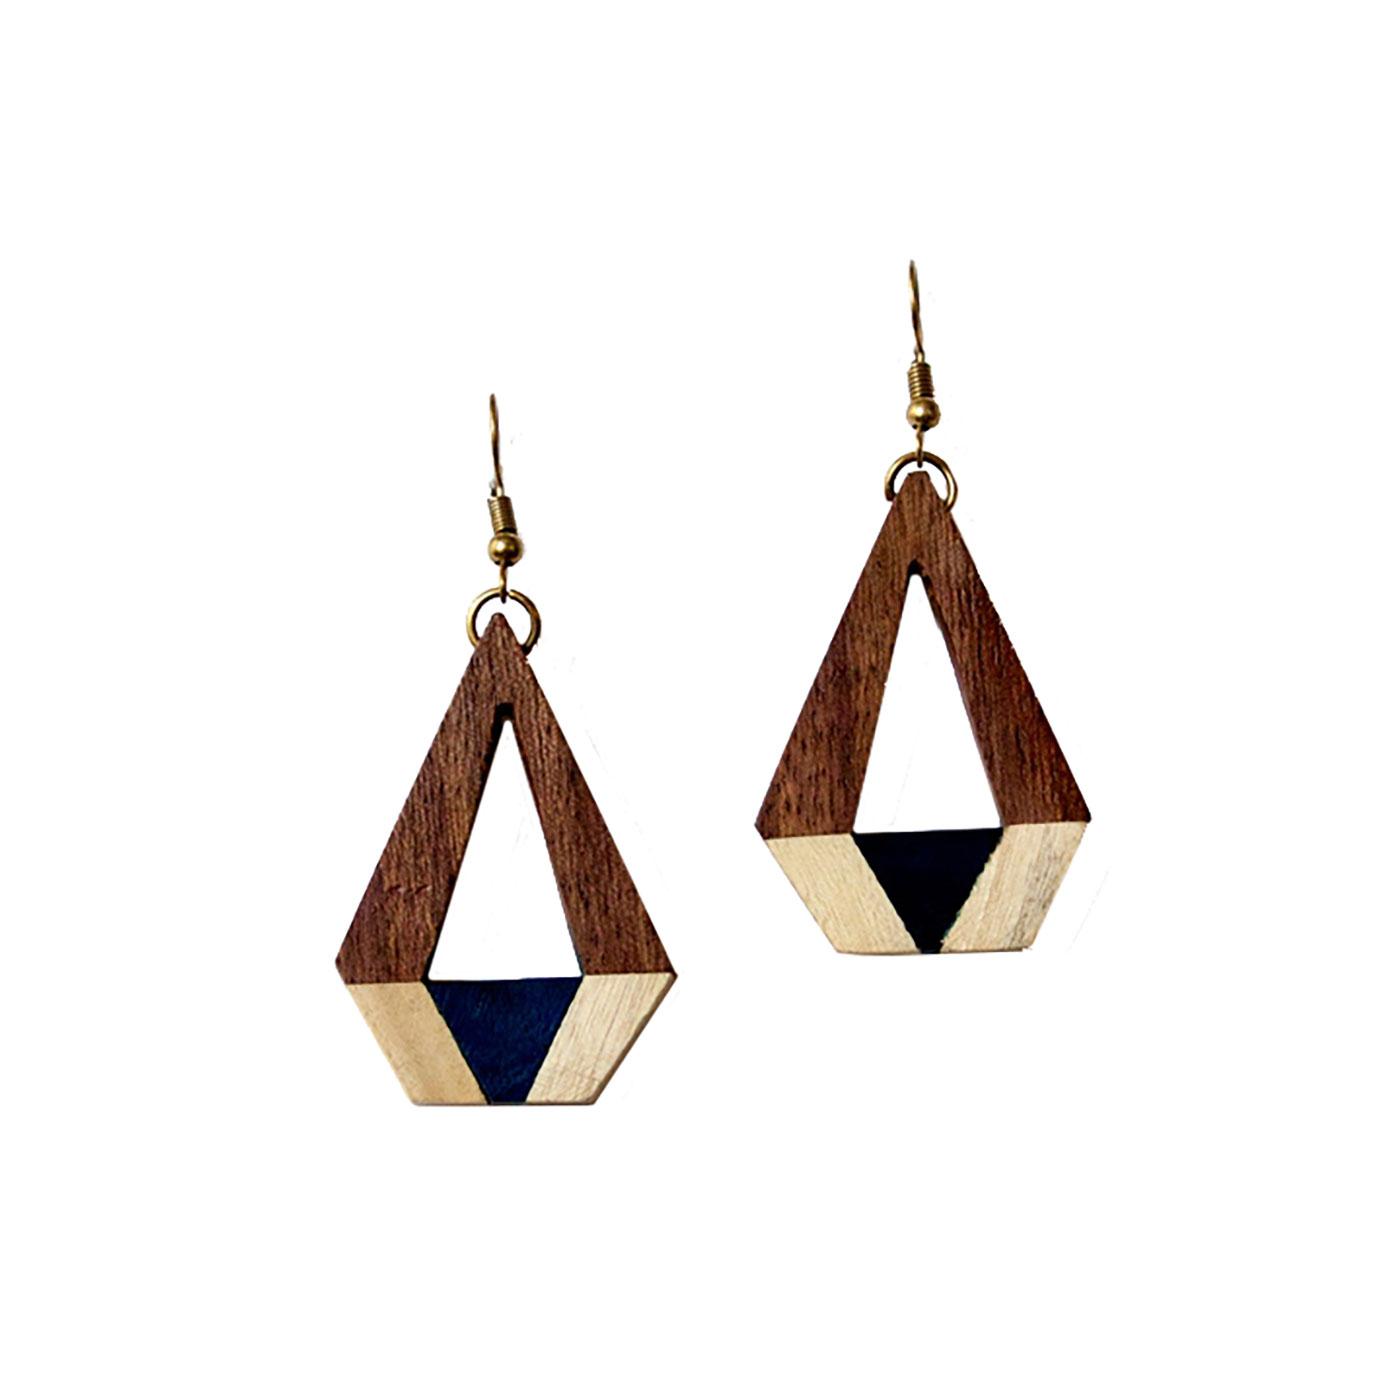 + NOMADS Retro Wooden Geometric Handmade Earrings